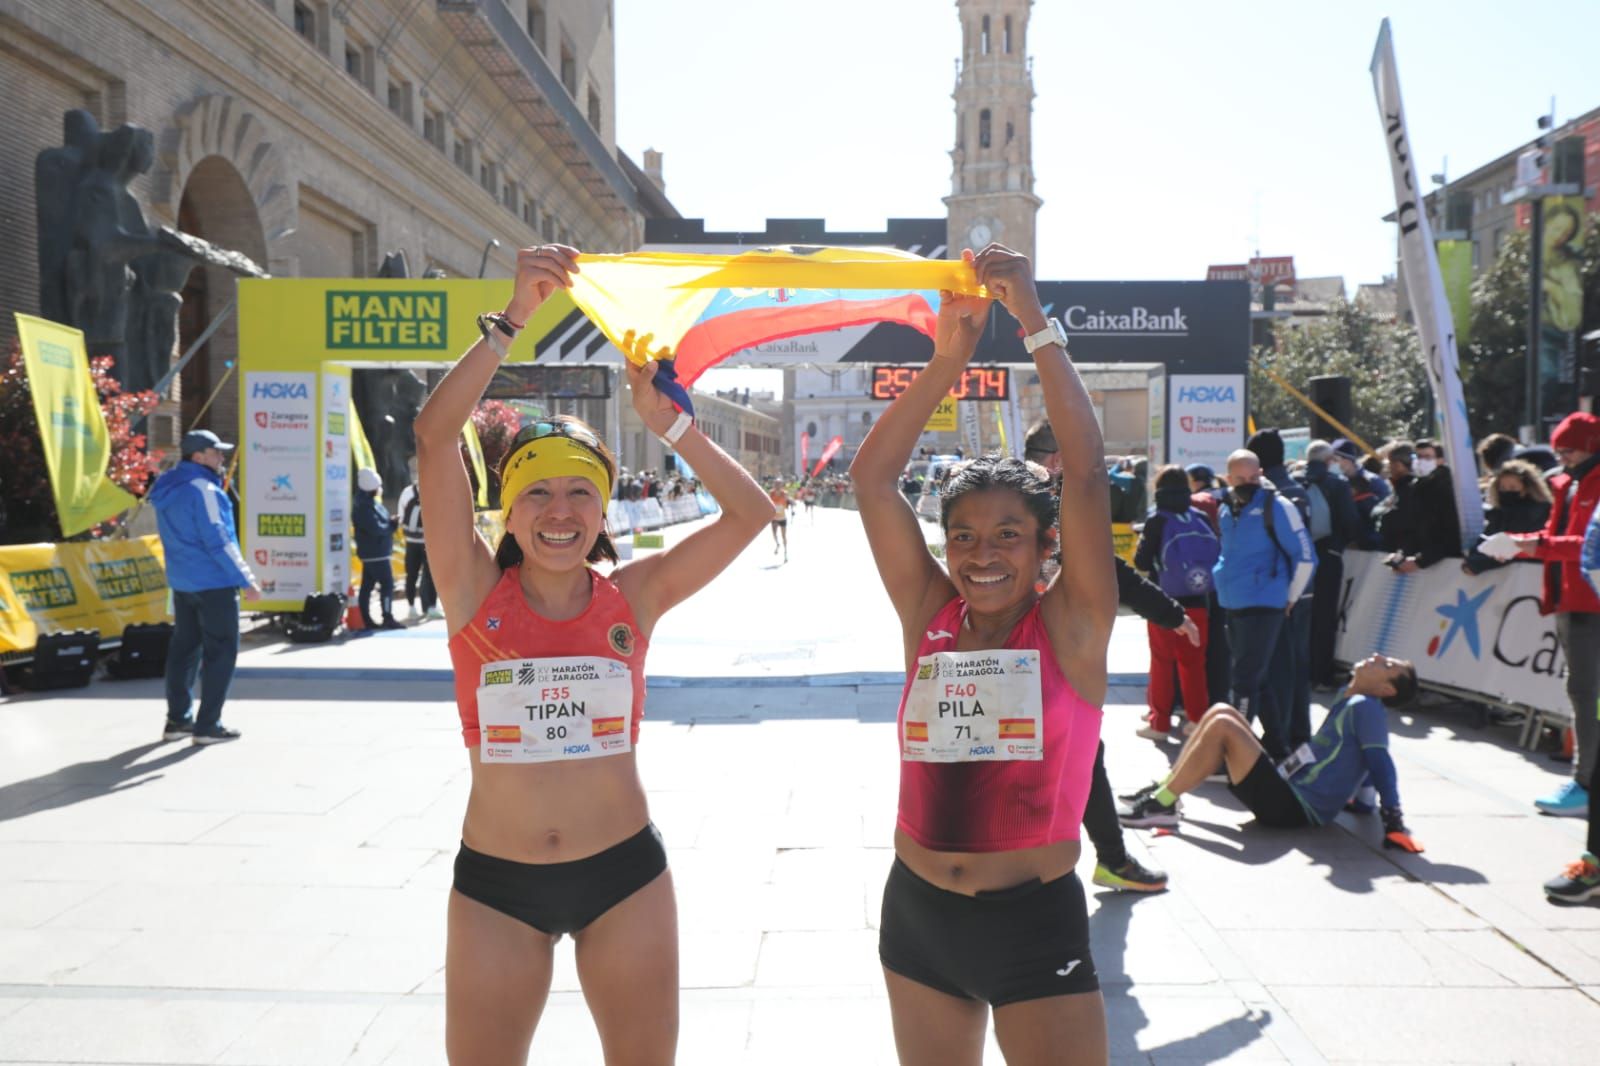 Fotos del maratón de Zaragoza 2022: Búscate en nuestras imágenes